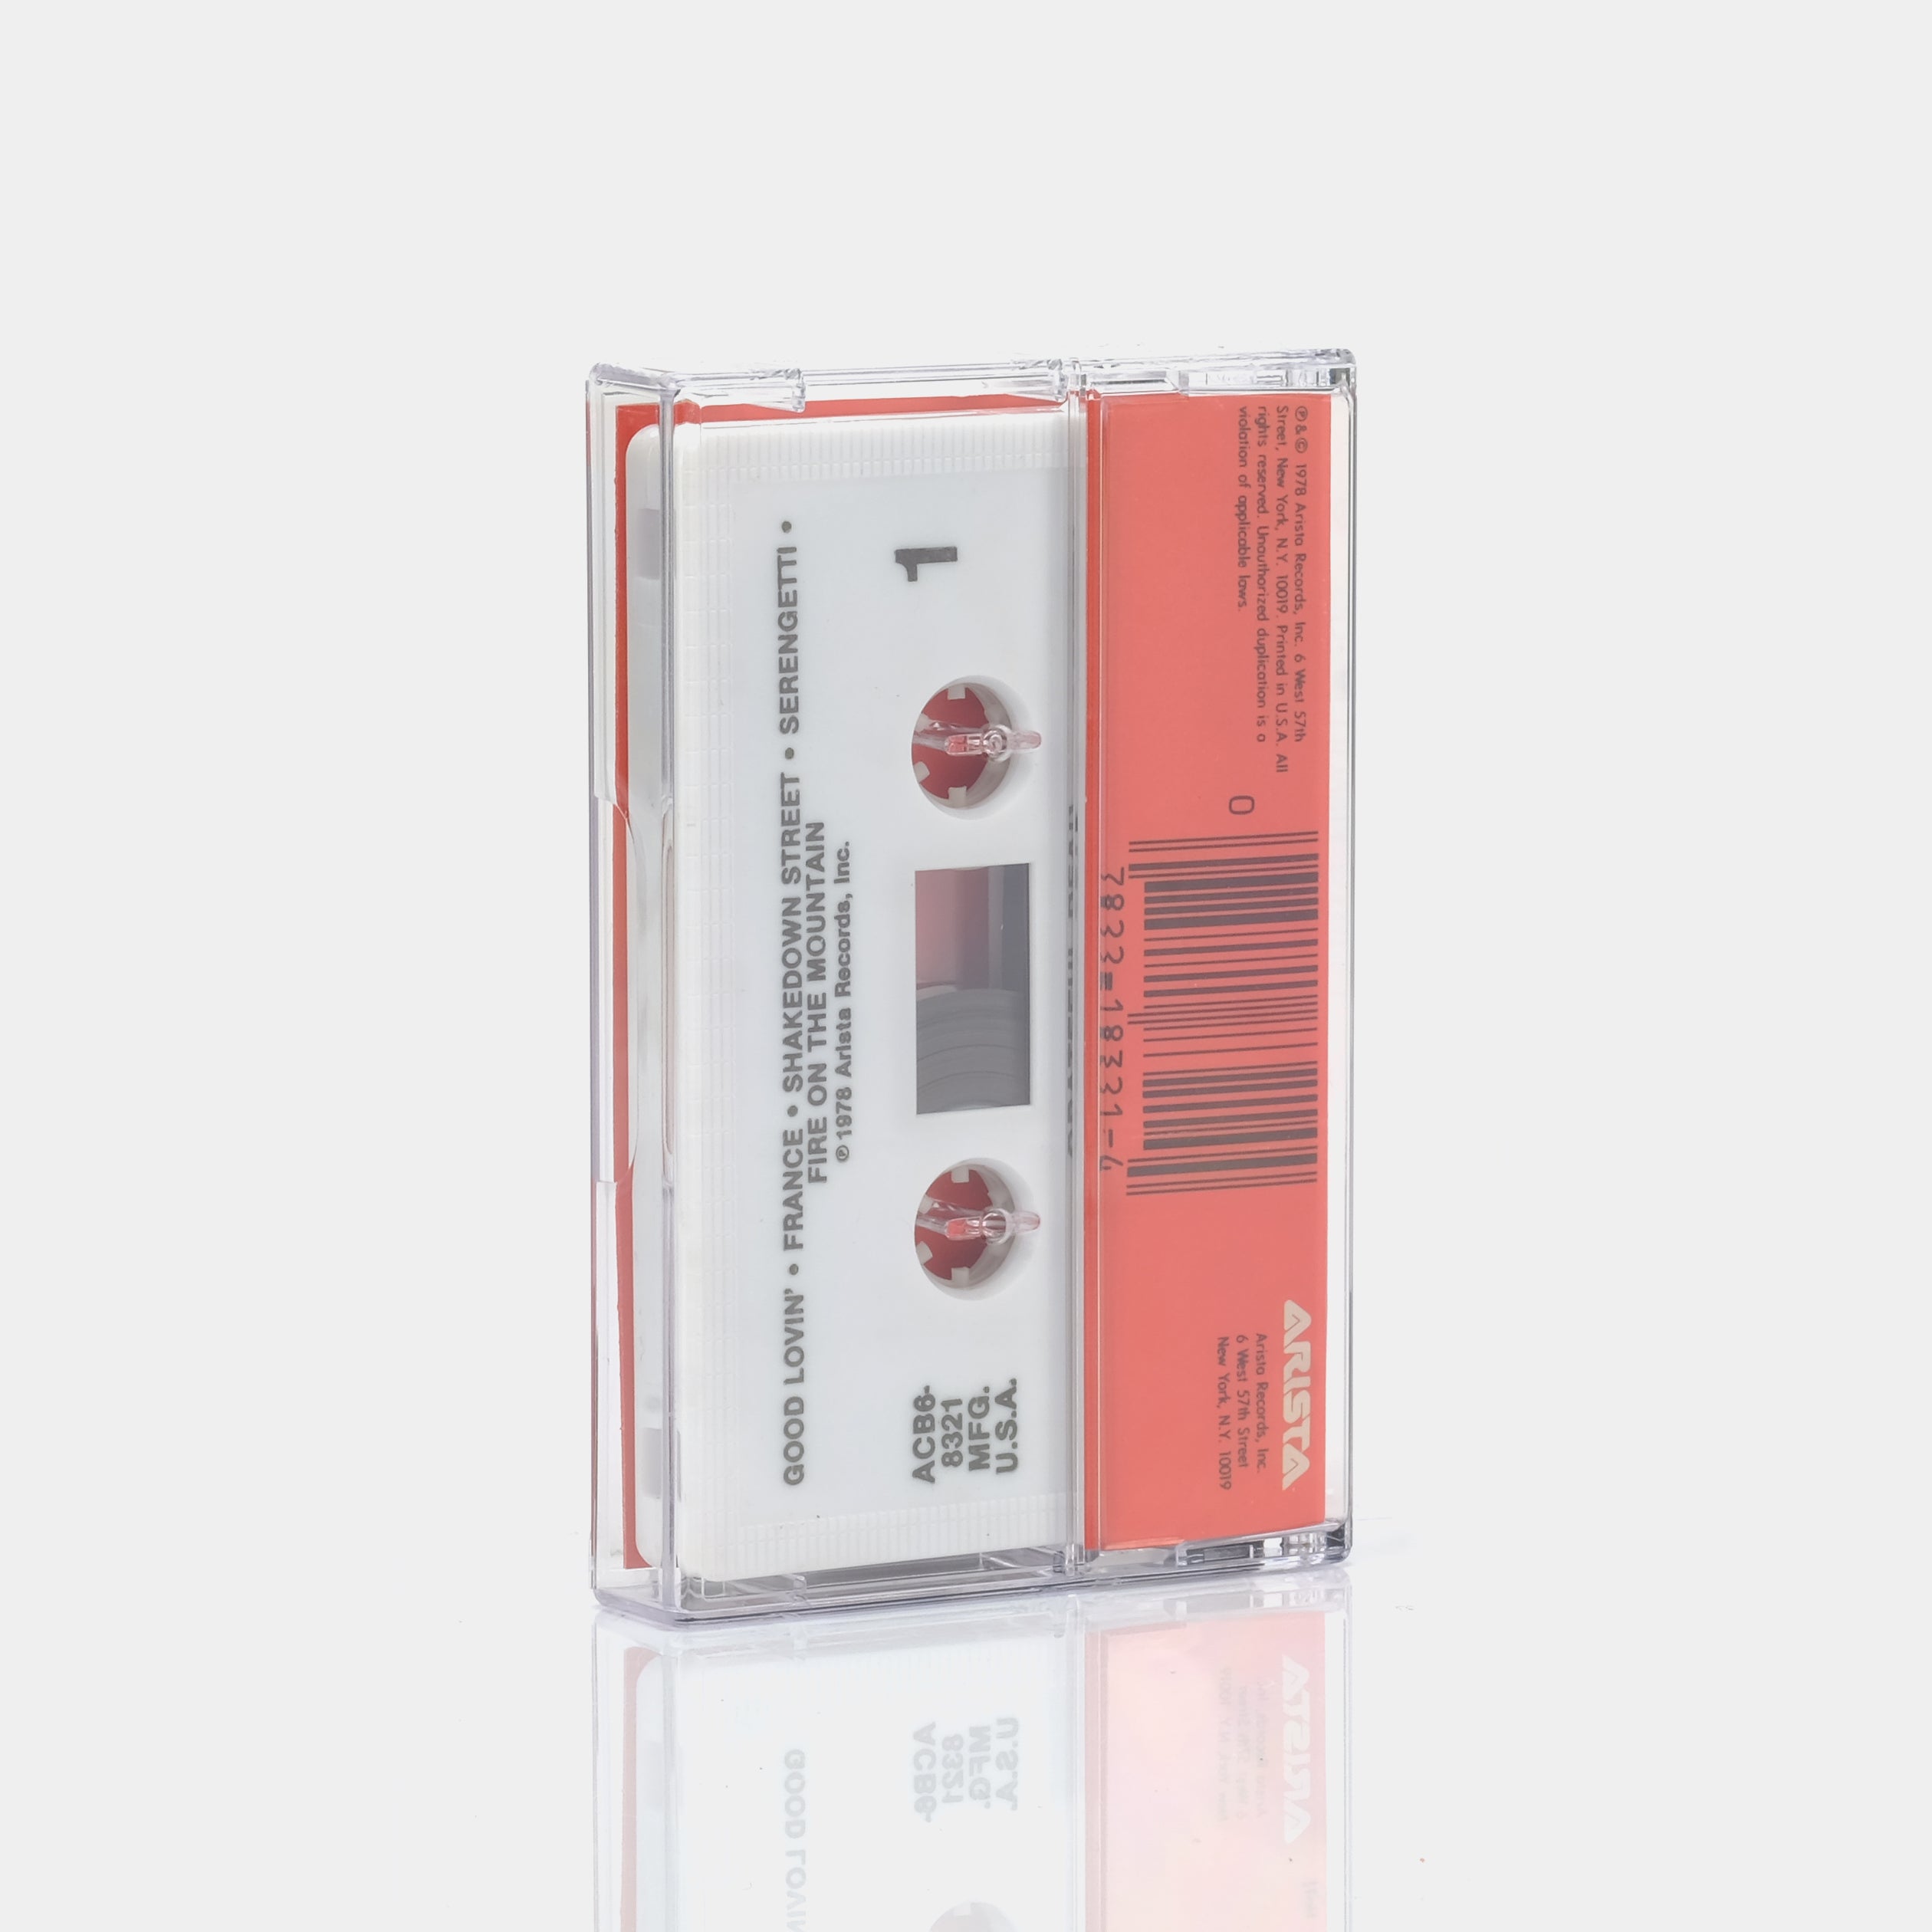 Grateful Dead - Shakedown Street Cassette Tape